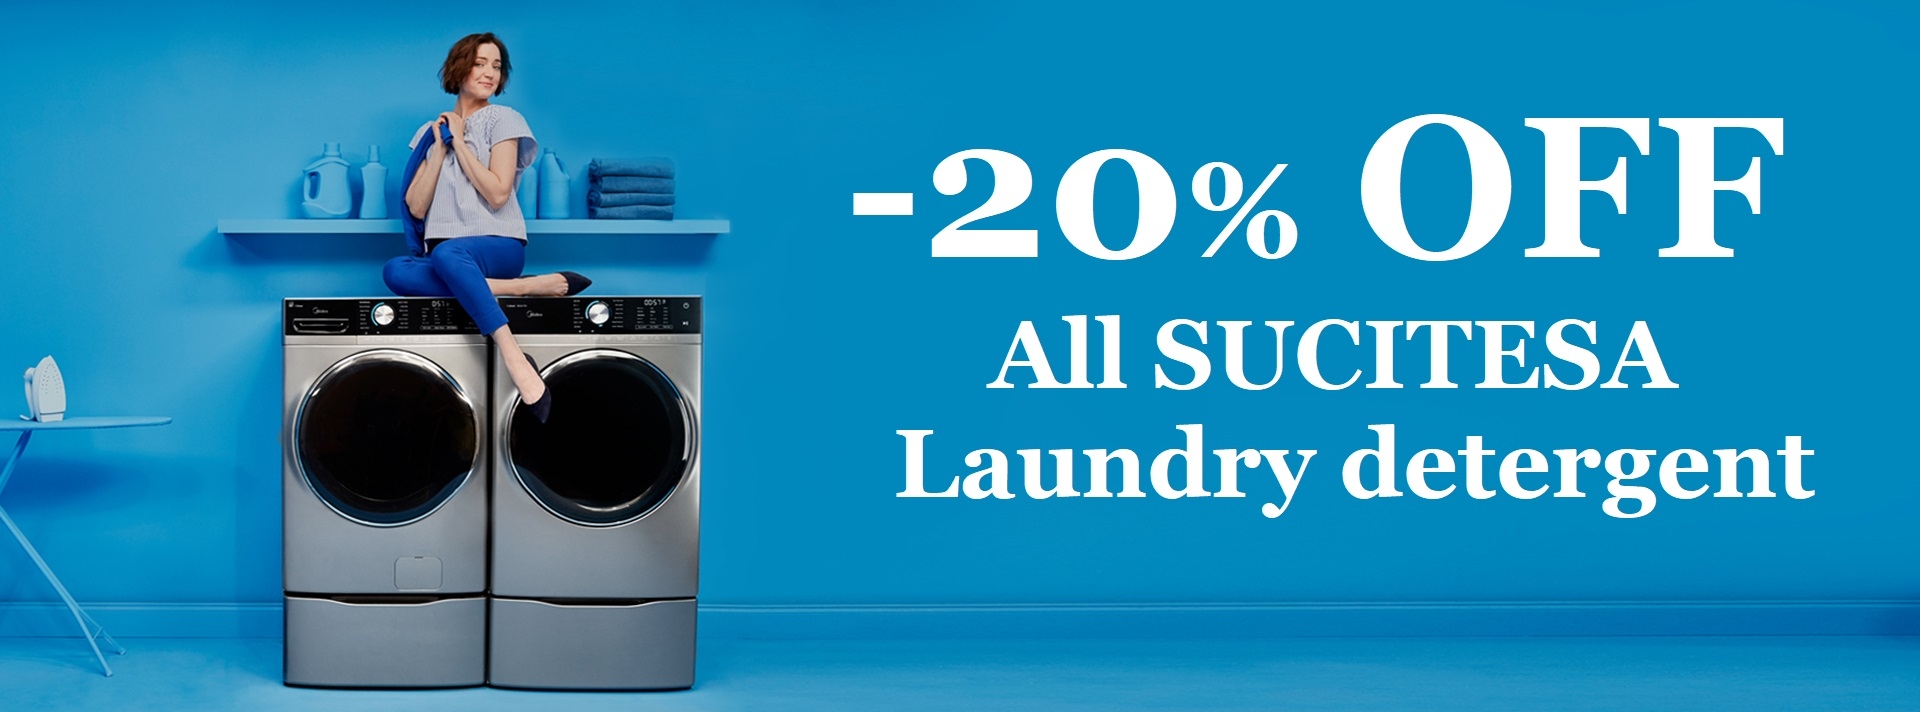 Laundry detergent sales